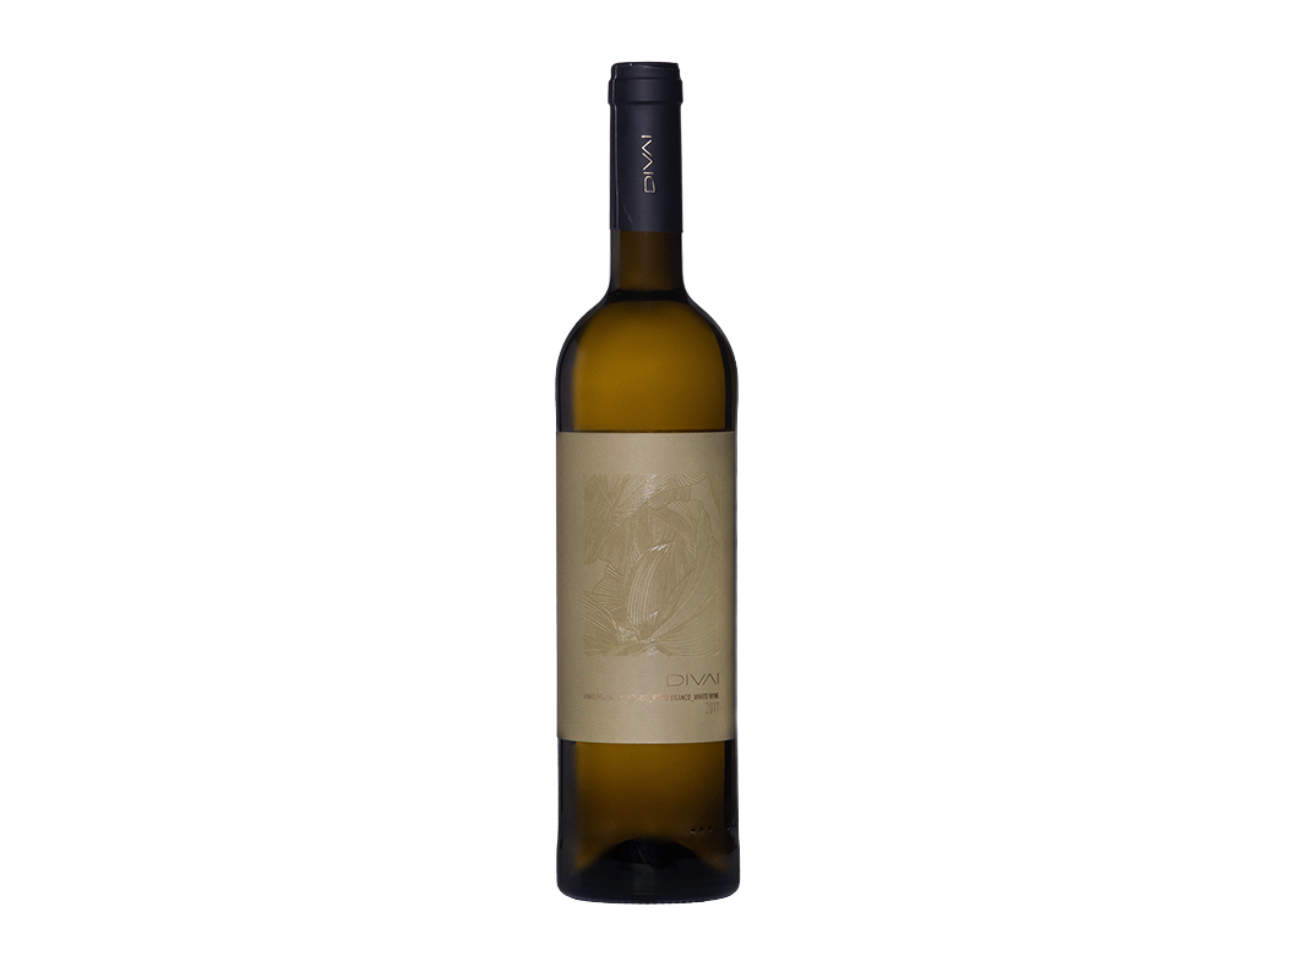 DIVAI White wine 0.75l